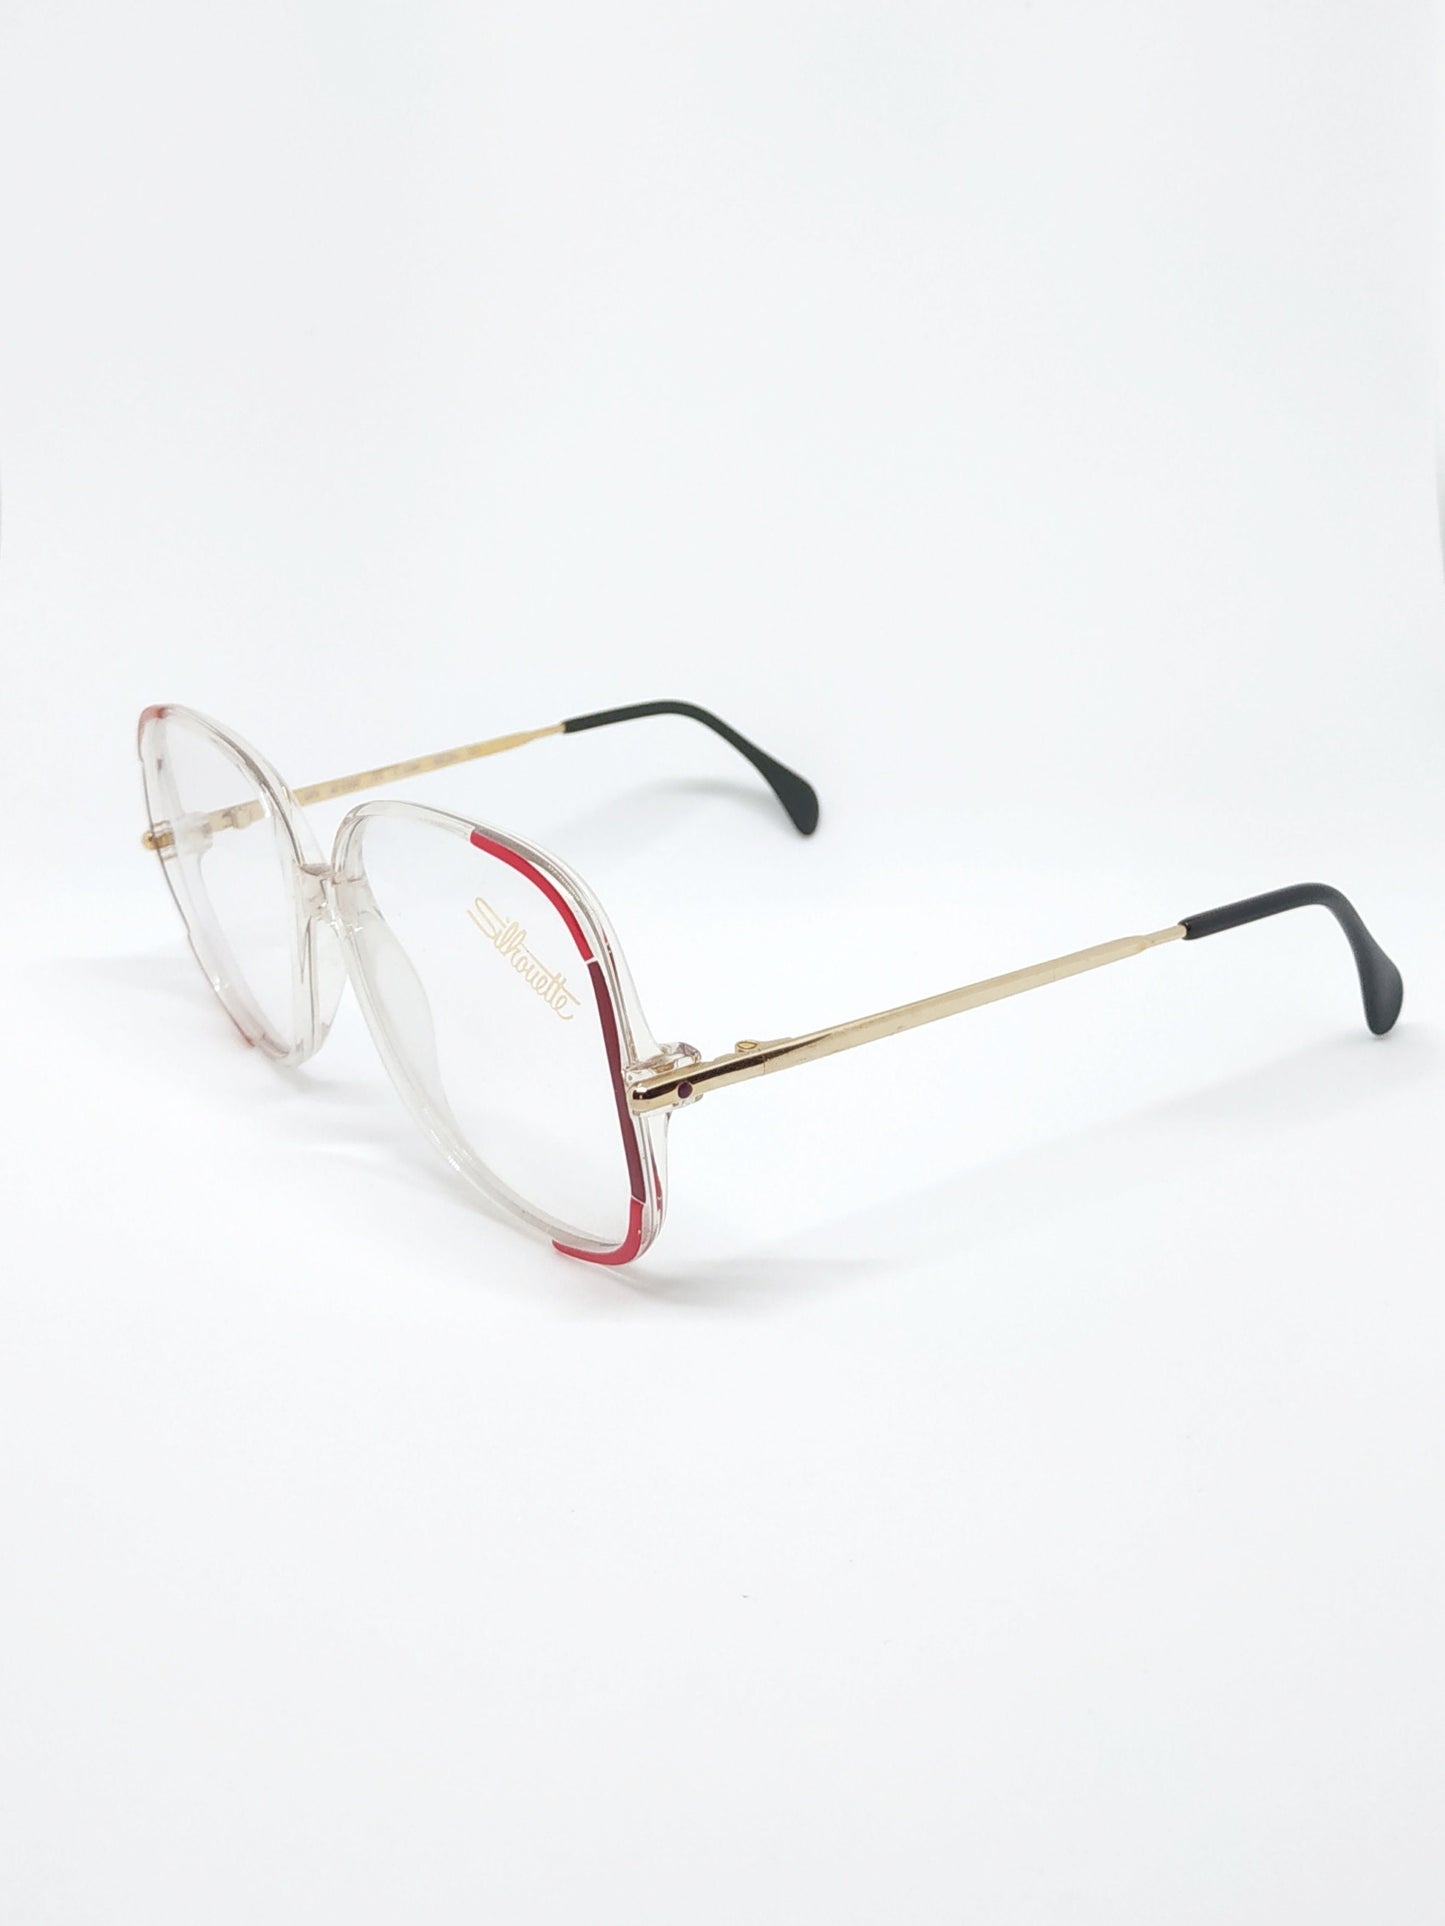 Vintage New old stock eyeglasses frames